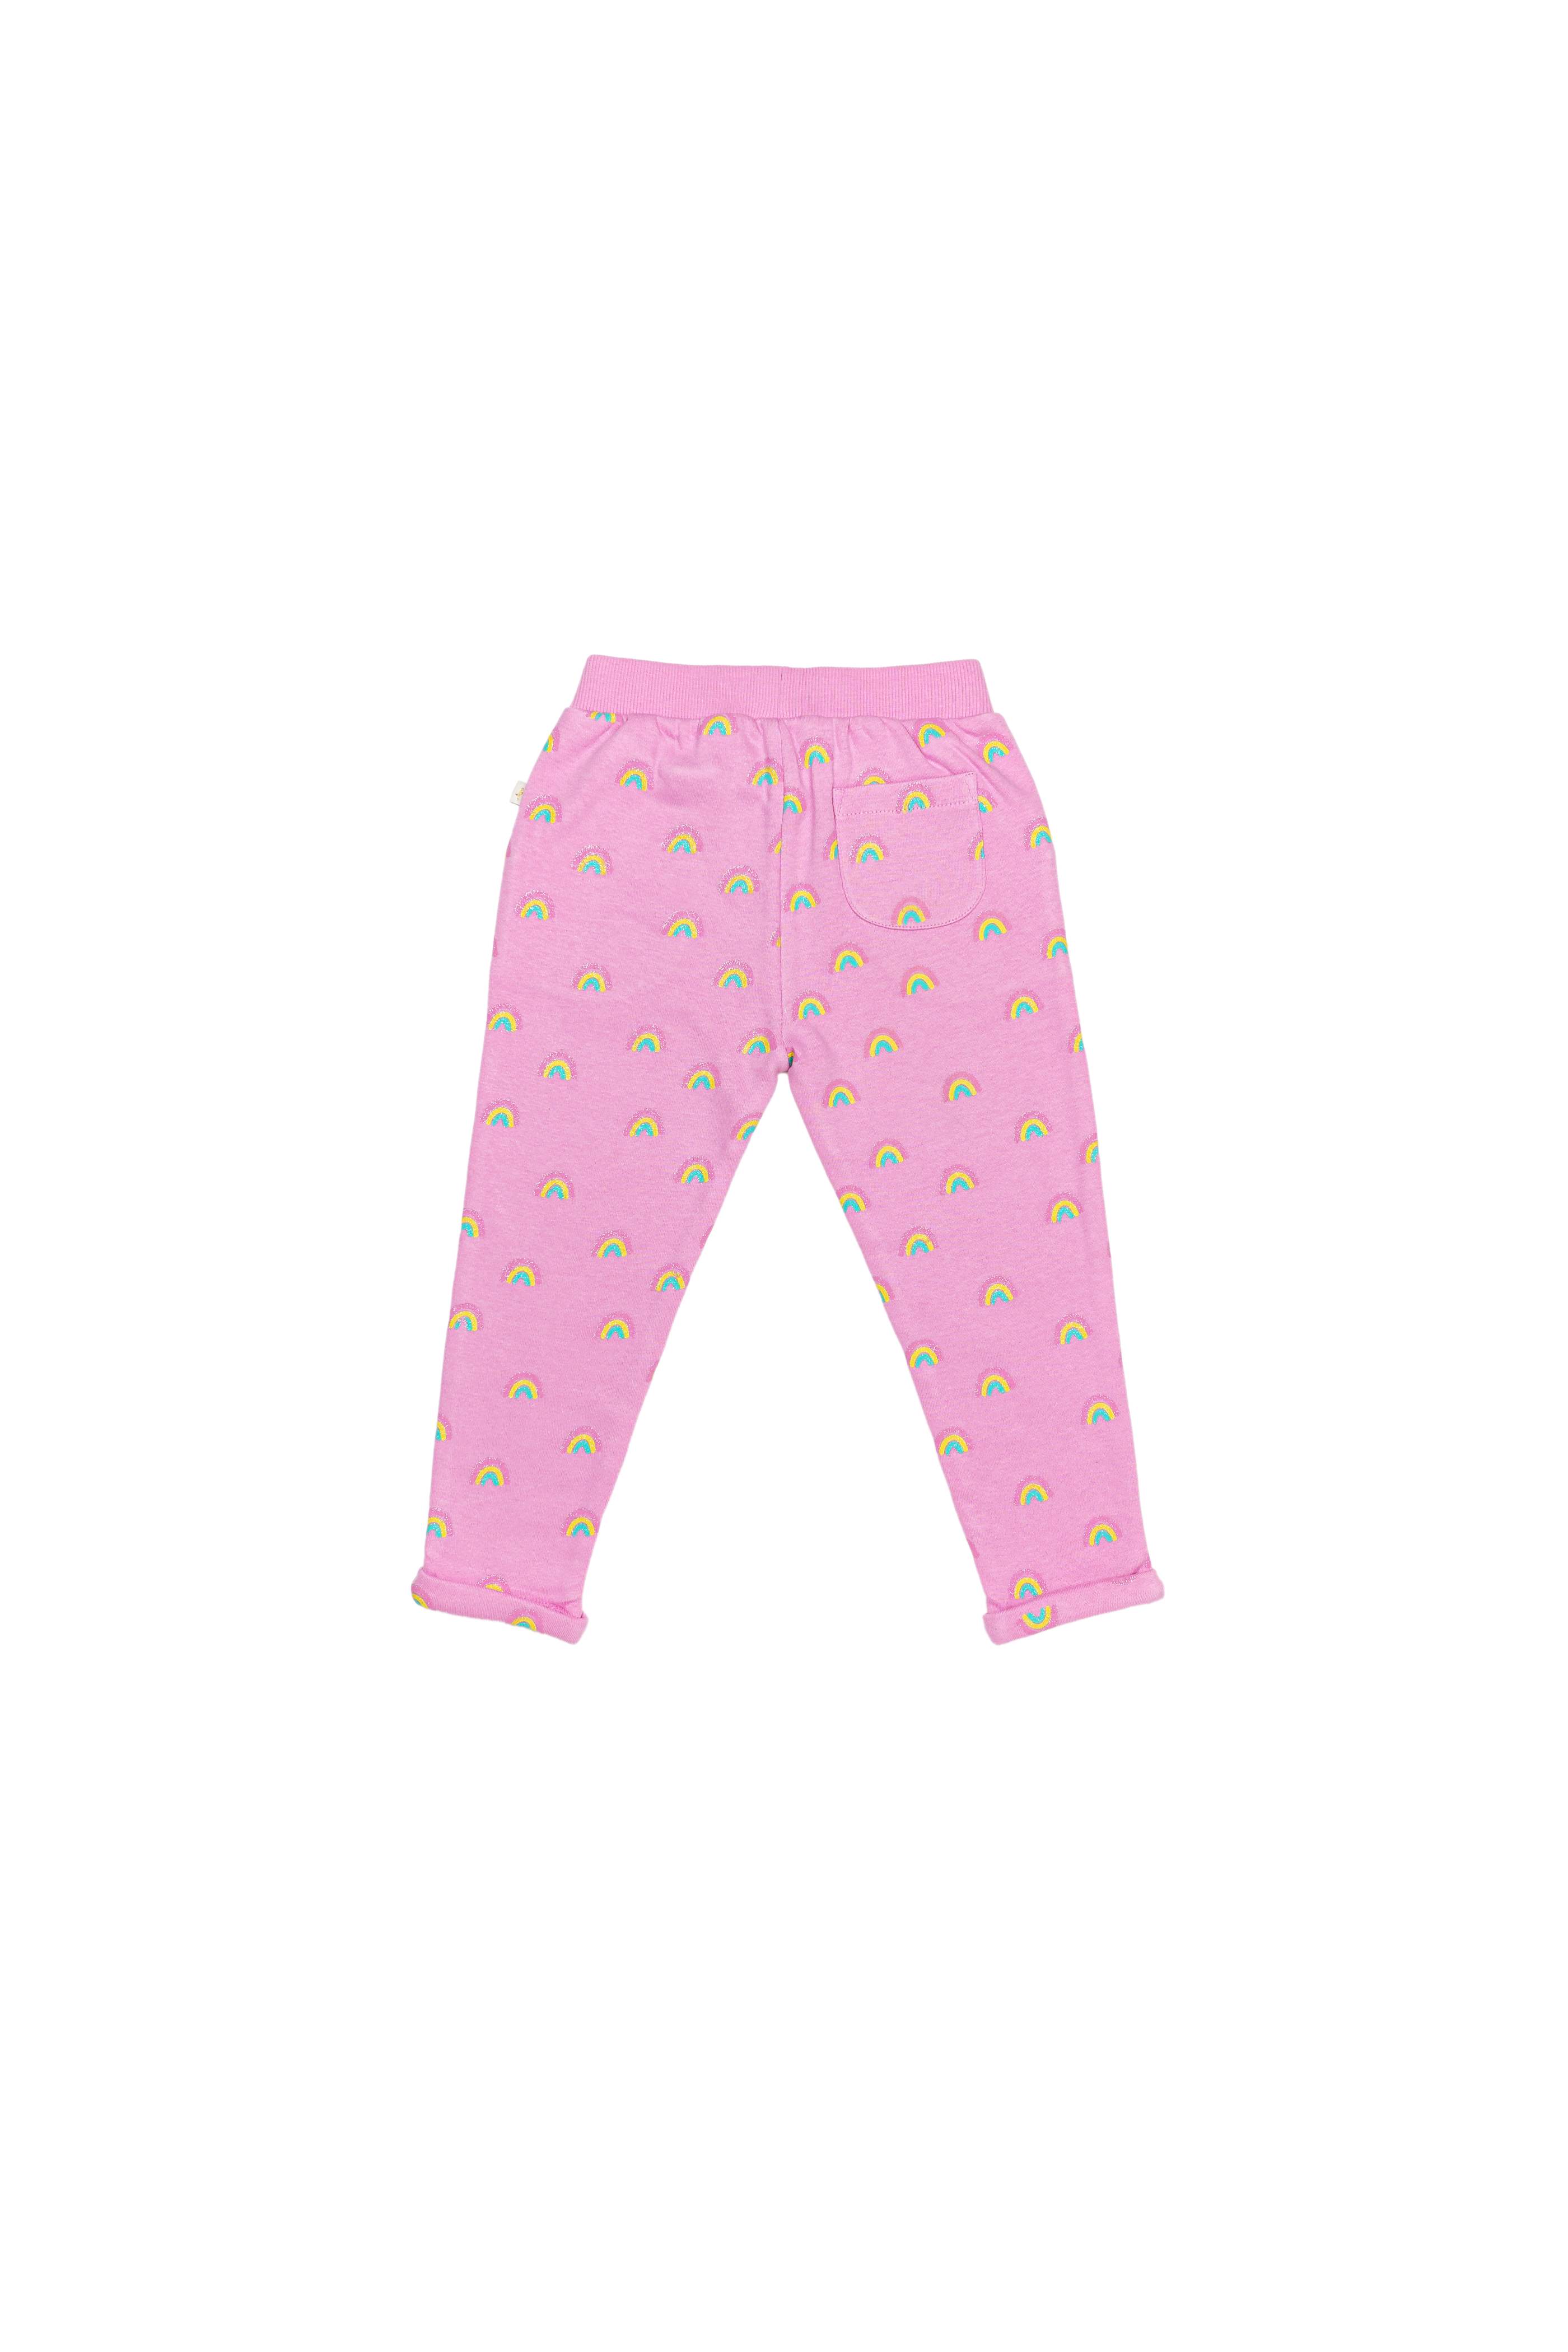 Pyjama Bottoms | Women's Nightwear & Sleepwear | Pour Moi